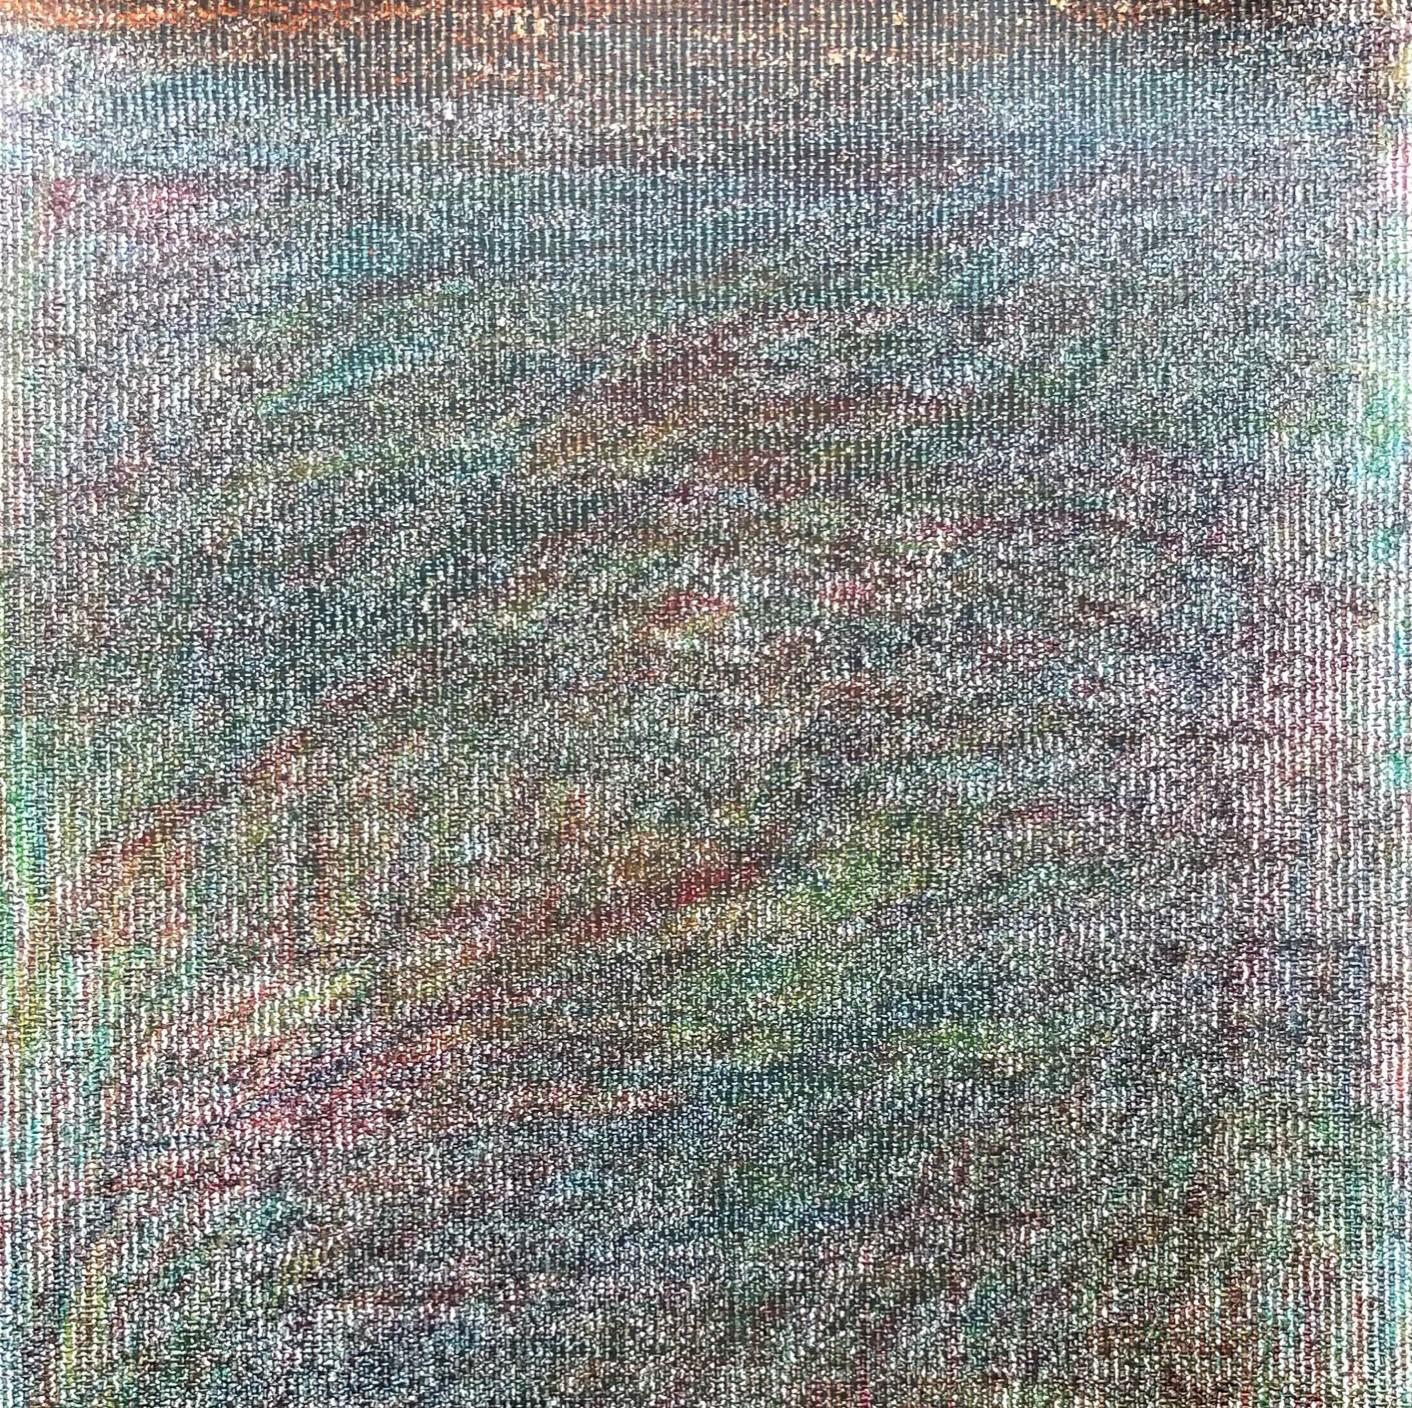 Body in the Field #10 - Contemporain, rouge, jaune, vert, 21e siècle - Art de Zsolt Berszán